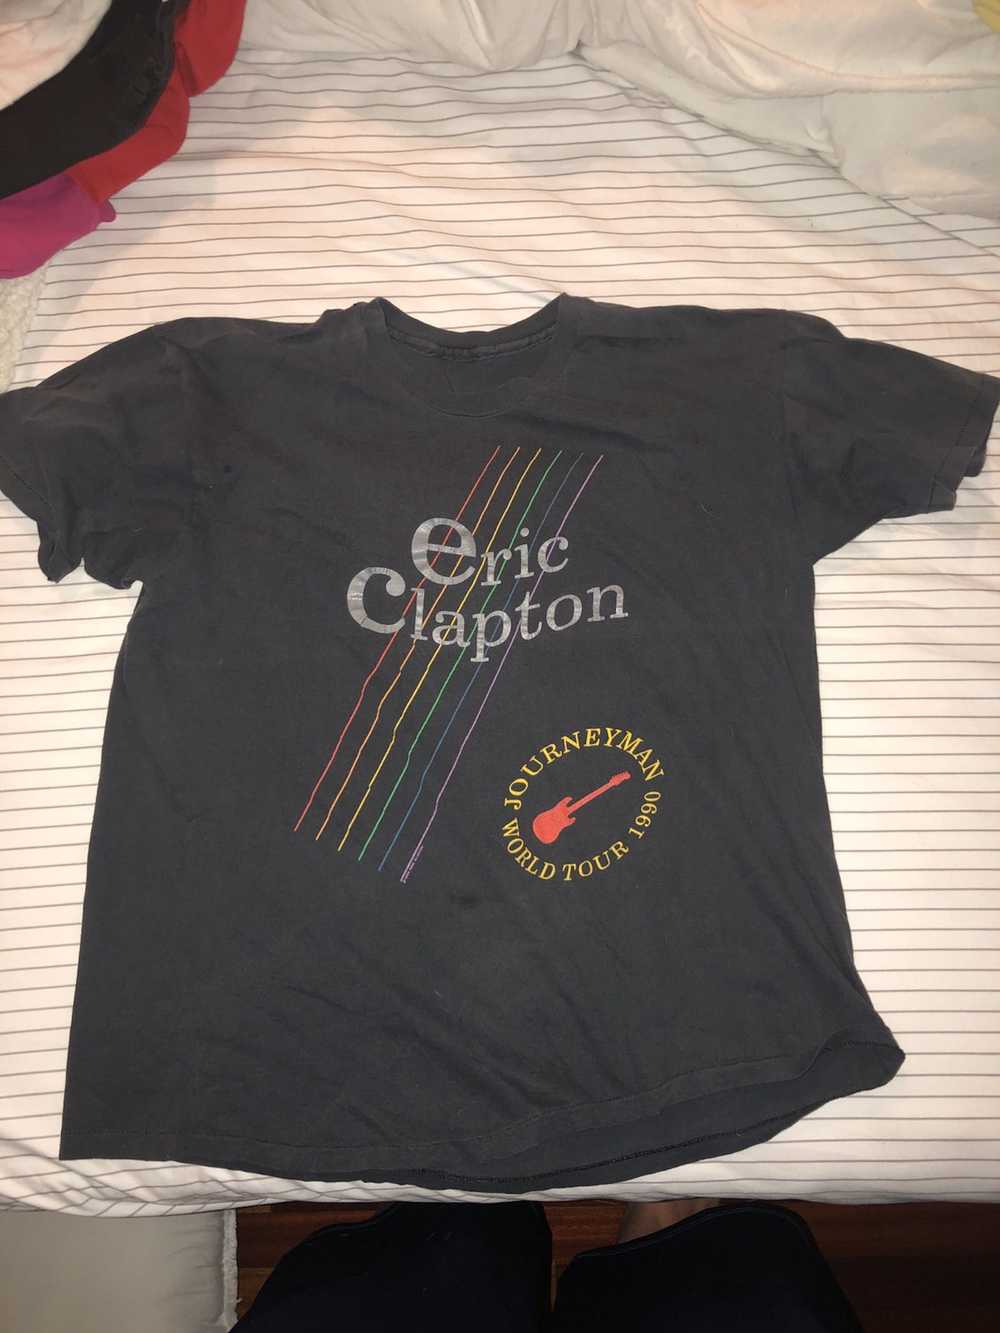 Vintage Vintage Eric Clapton 1990 tour shirt - image 1